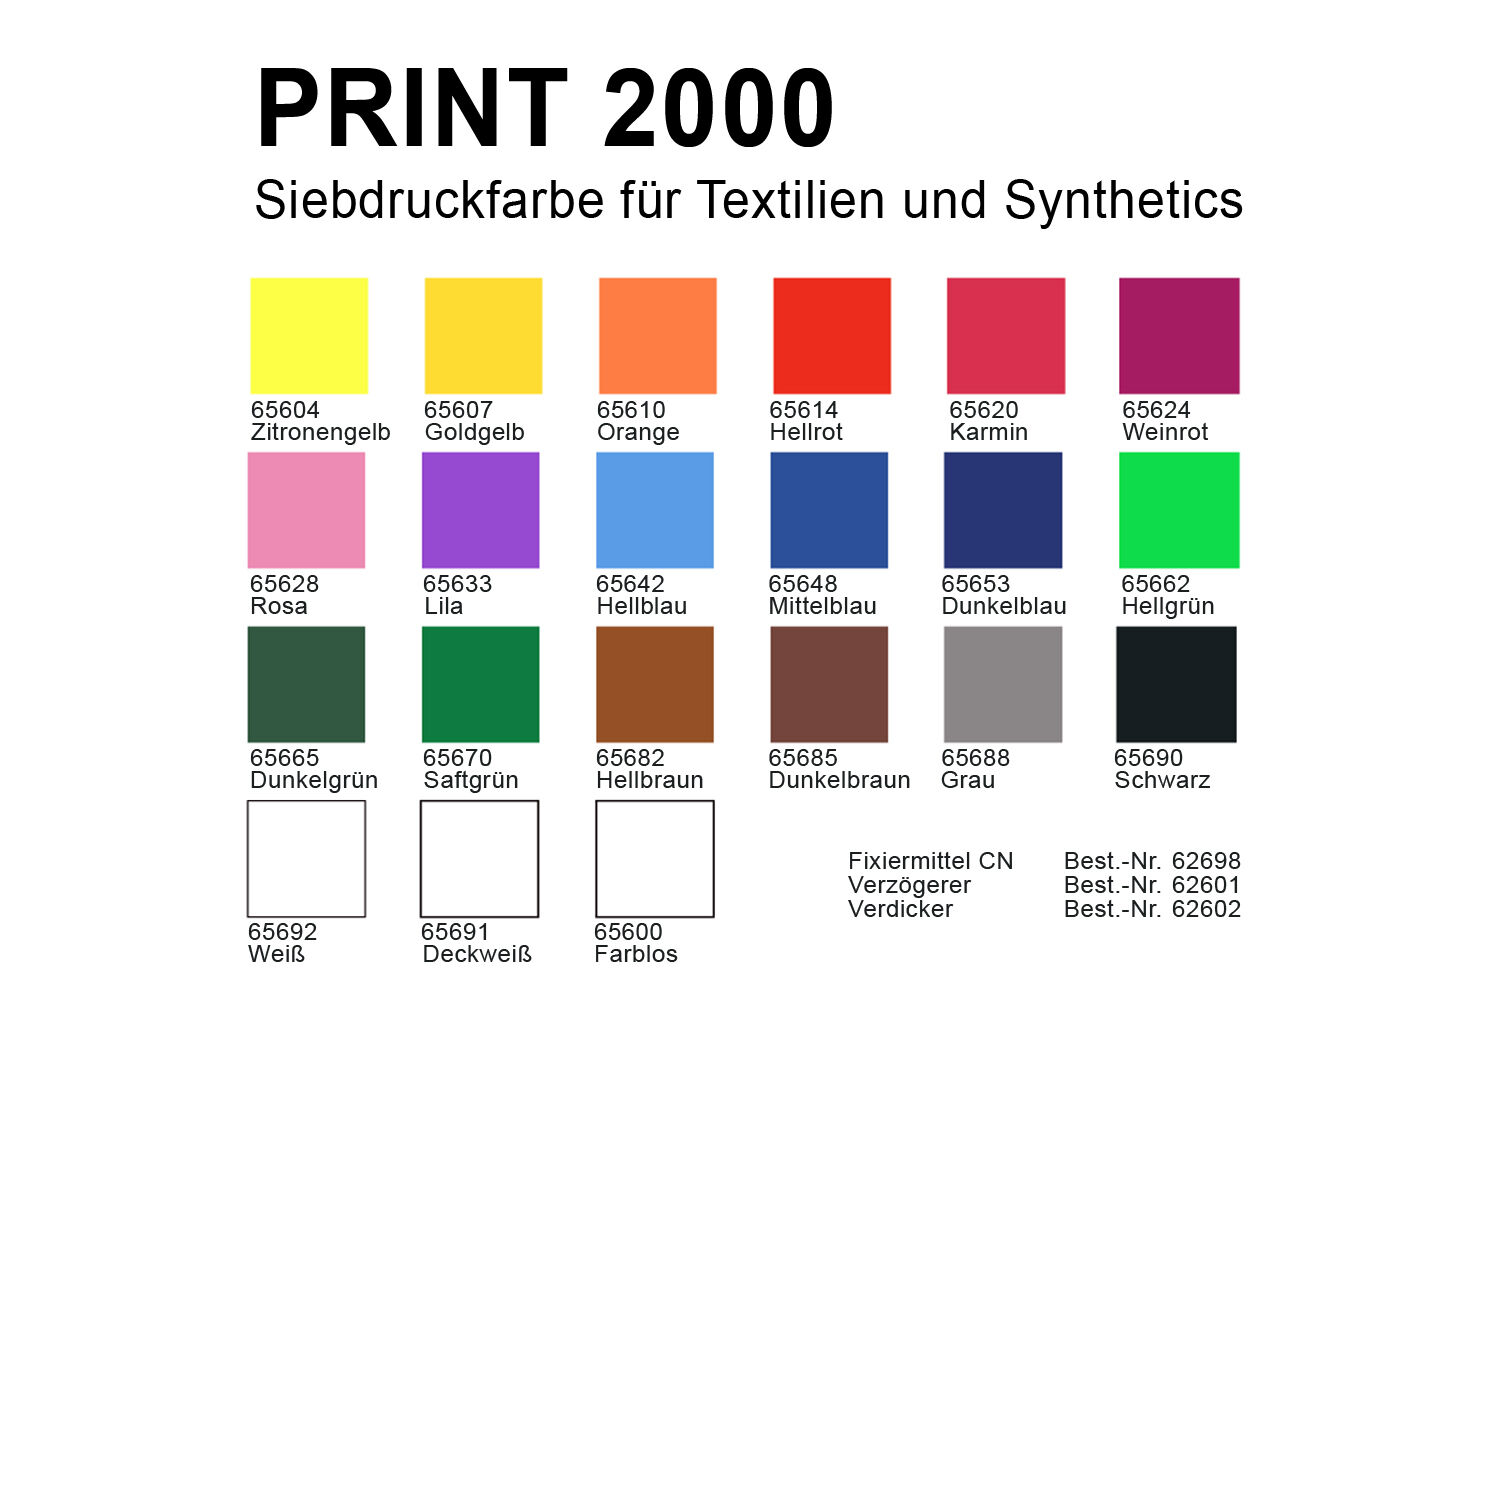 NEU PAINT IT EASY Siebdruckfarbe DEKAPRINT 2000, 250 ml, Farblos Bild 2